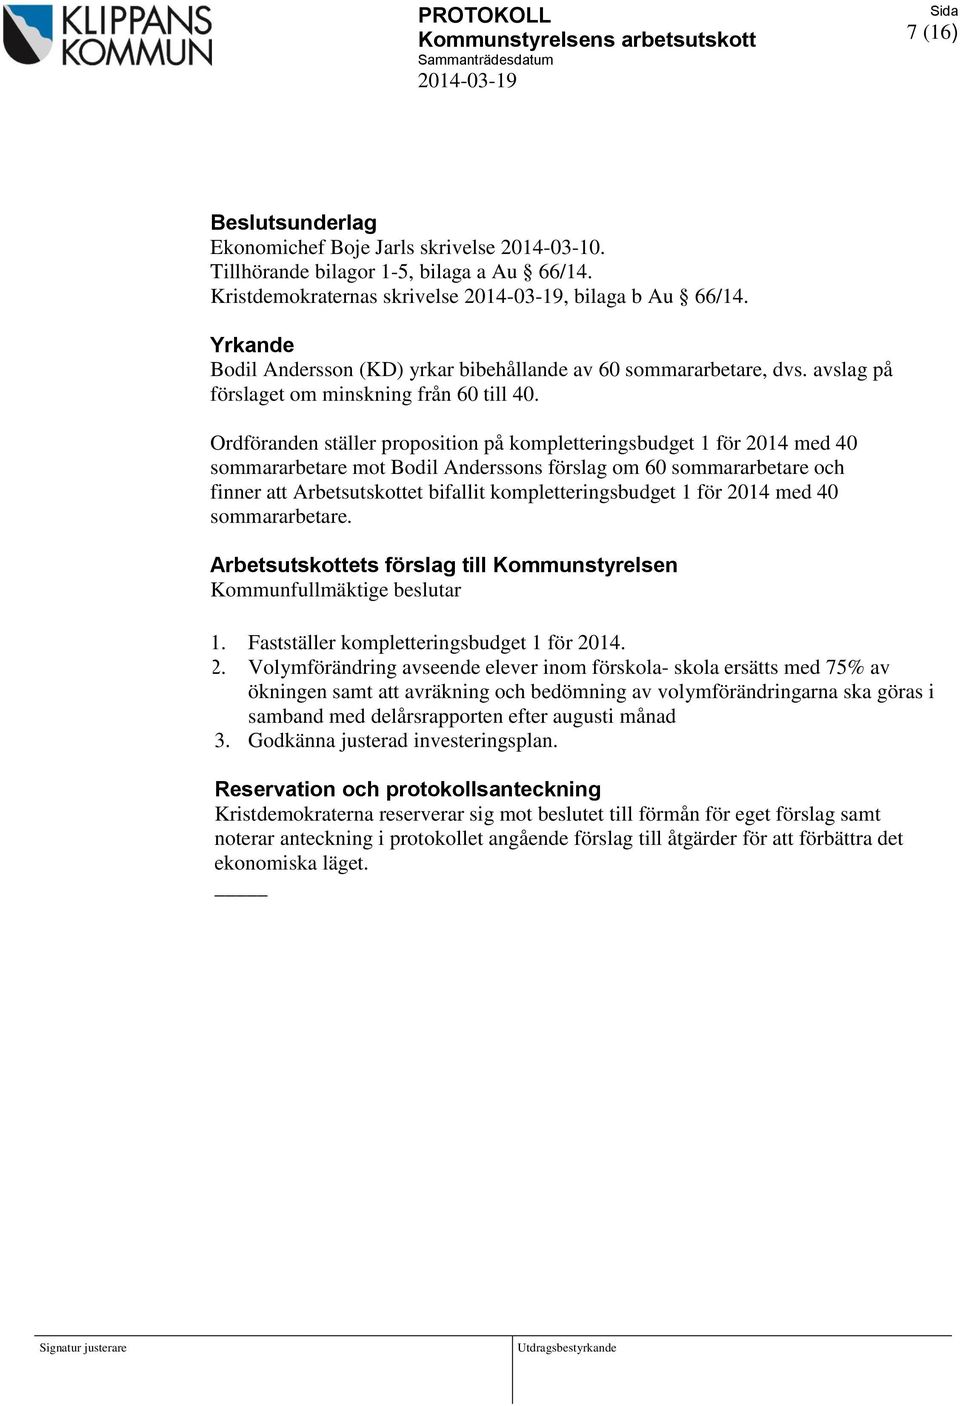 Ordföranden ställer proposition på kompletteringsbudget 1 för 2014 med 40 sommararbetare mot Bodil Anderssons förslag om 60 sommararbetare och finner att Arbetsutskottet bifallit kompletteringsbudget